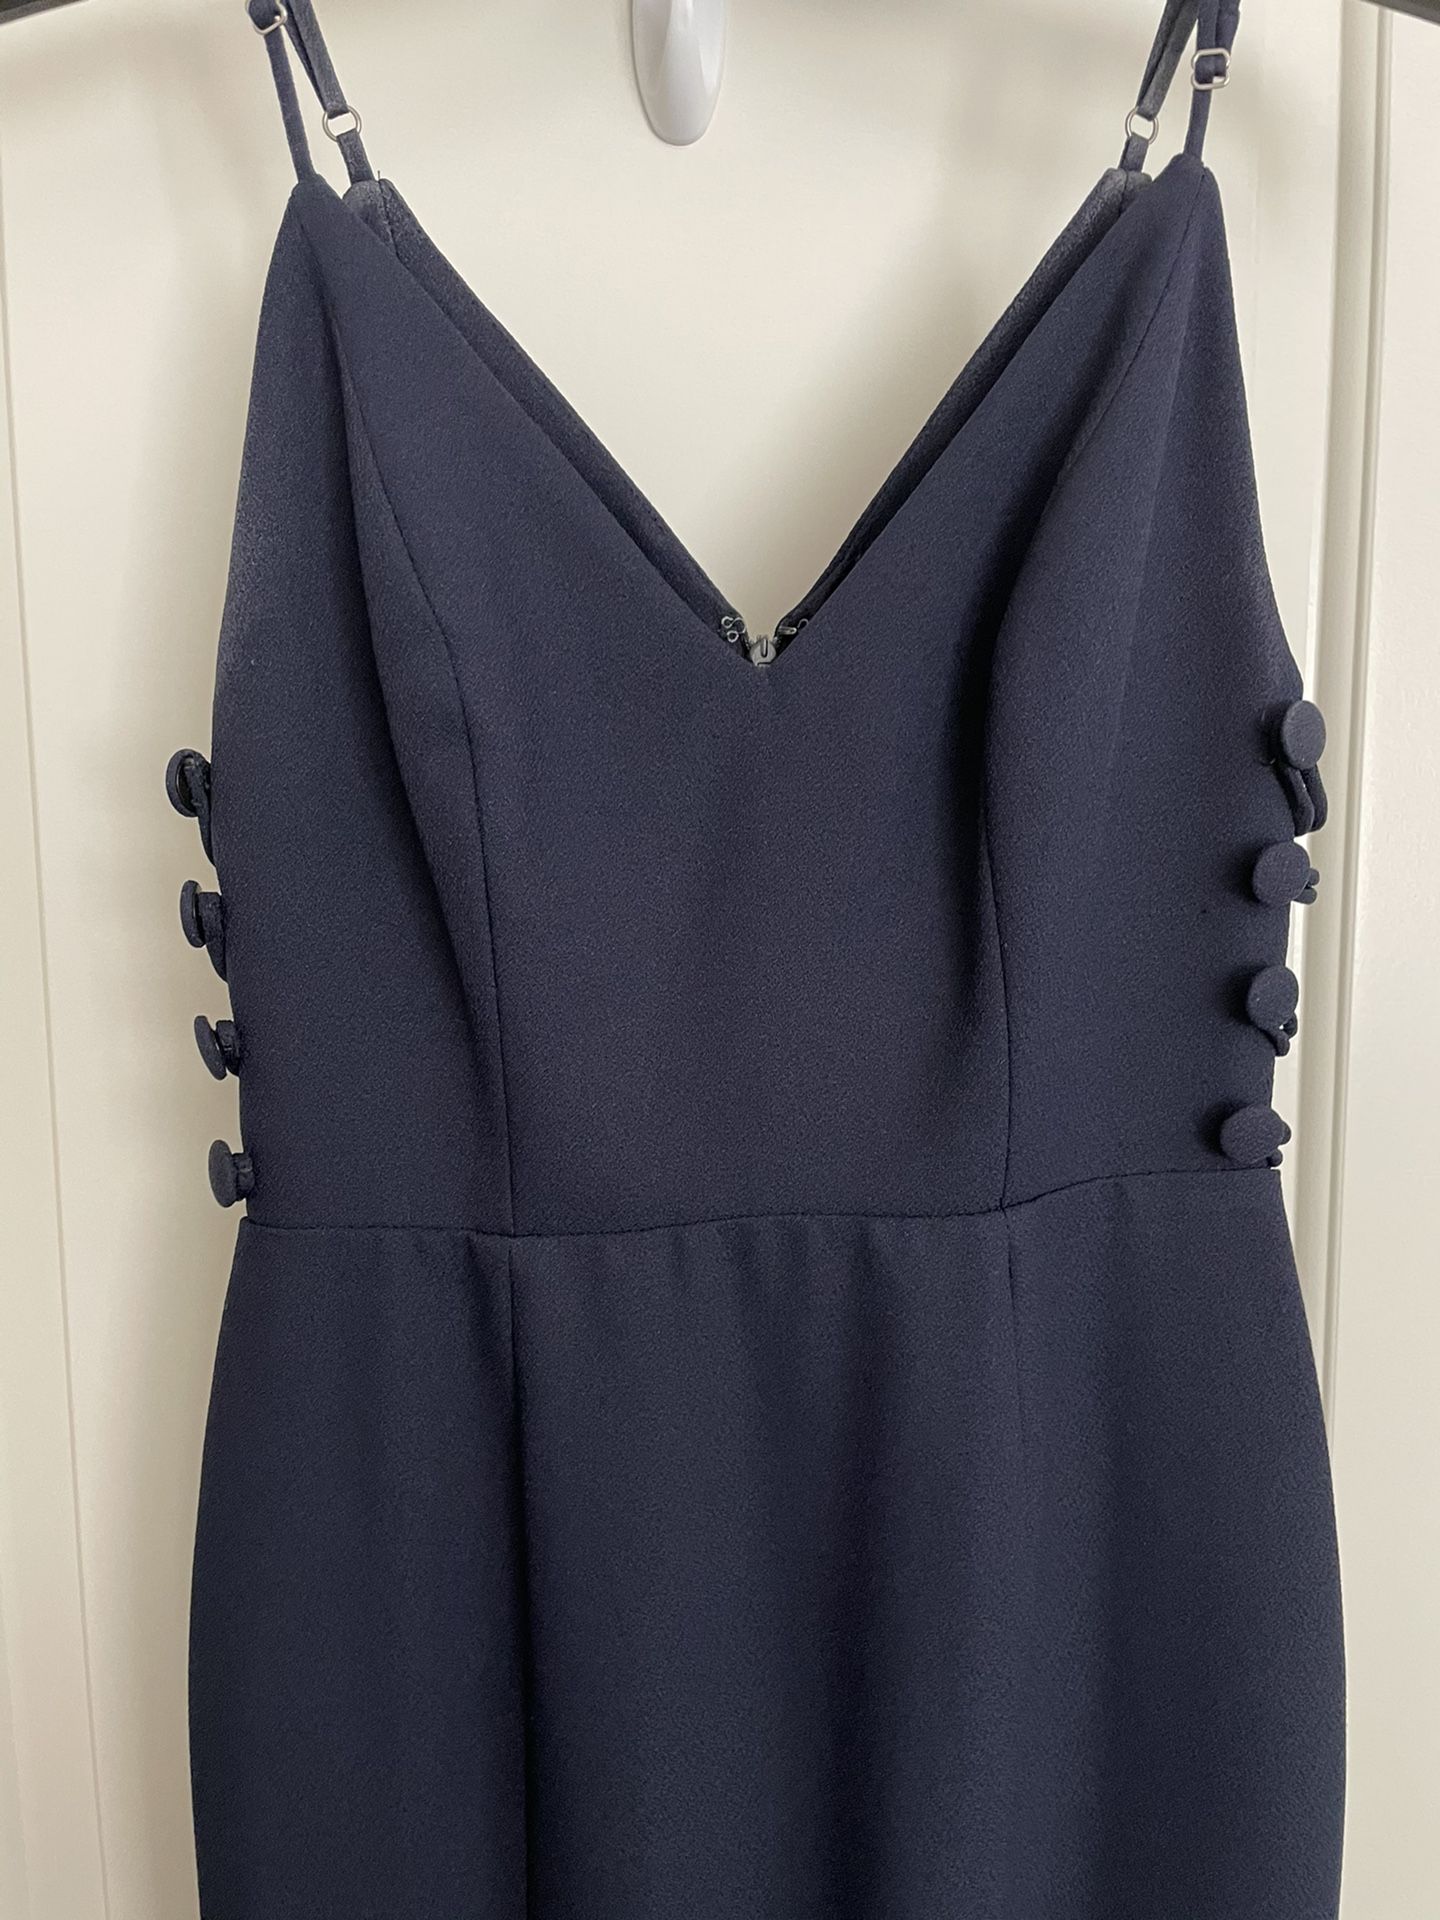 Navy Blue Long Dress